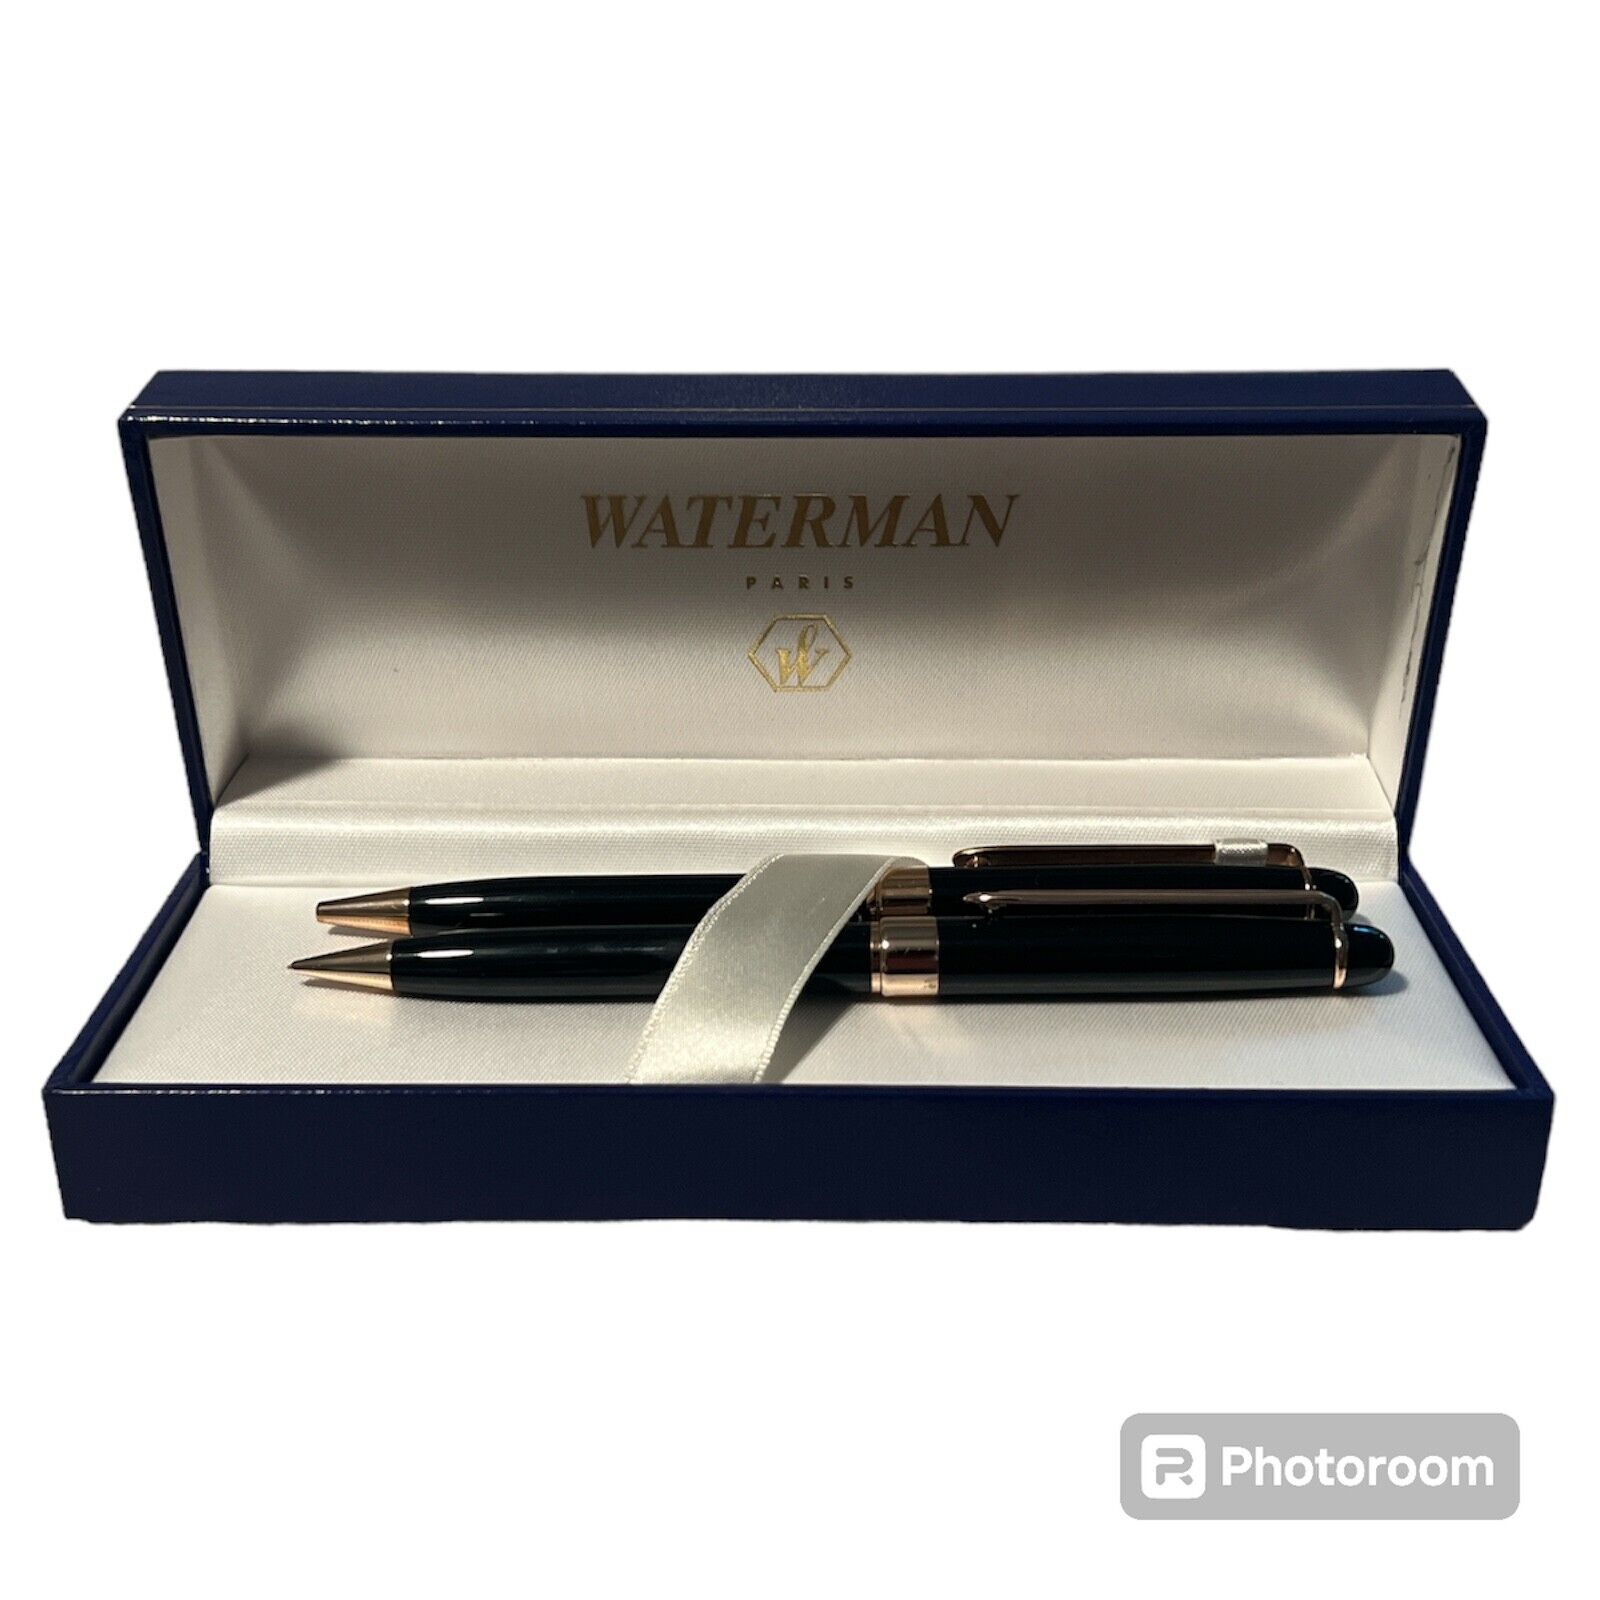 Waterman Paris PEN/PENCIL Box Set